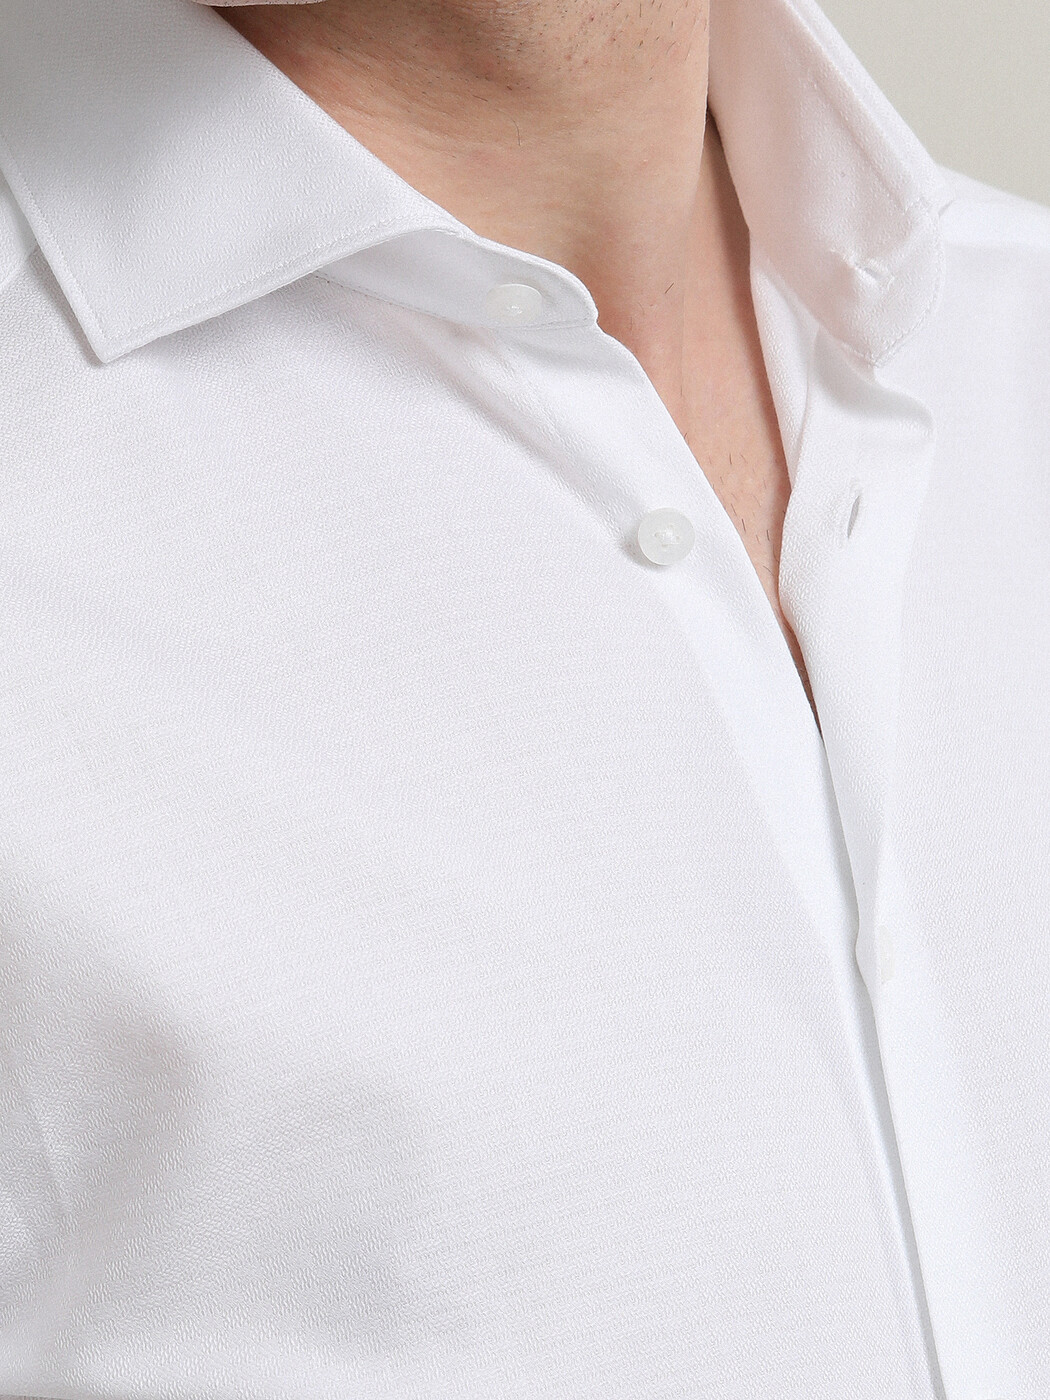 Beyaz Kareli Slim Fit Dokuma Klasik %100 Pamuk Gömlek - Thumbnail